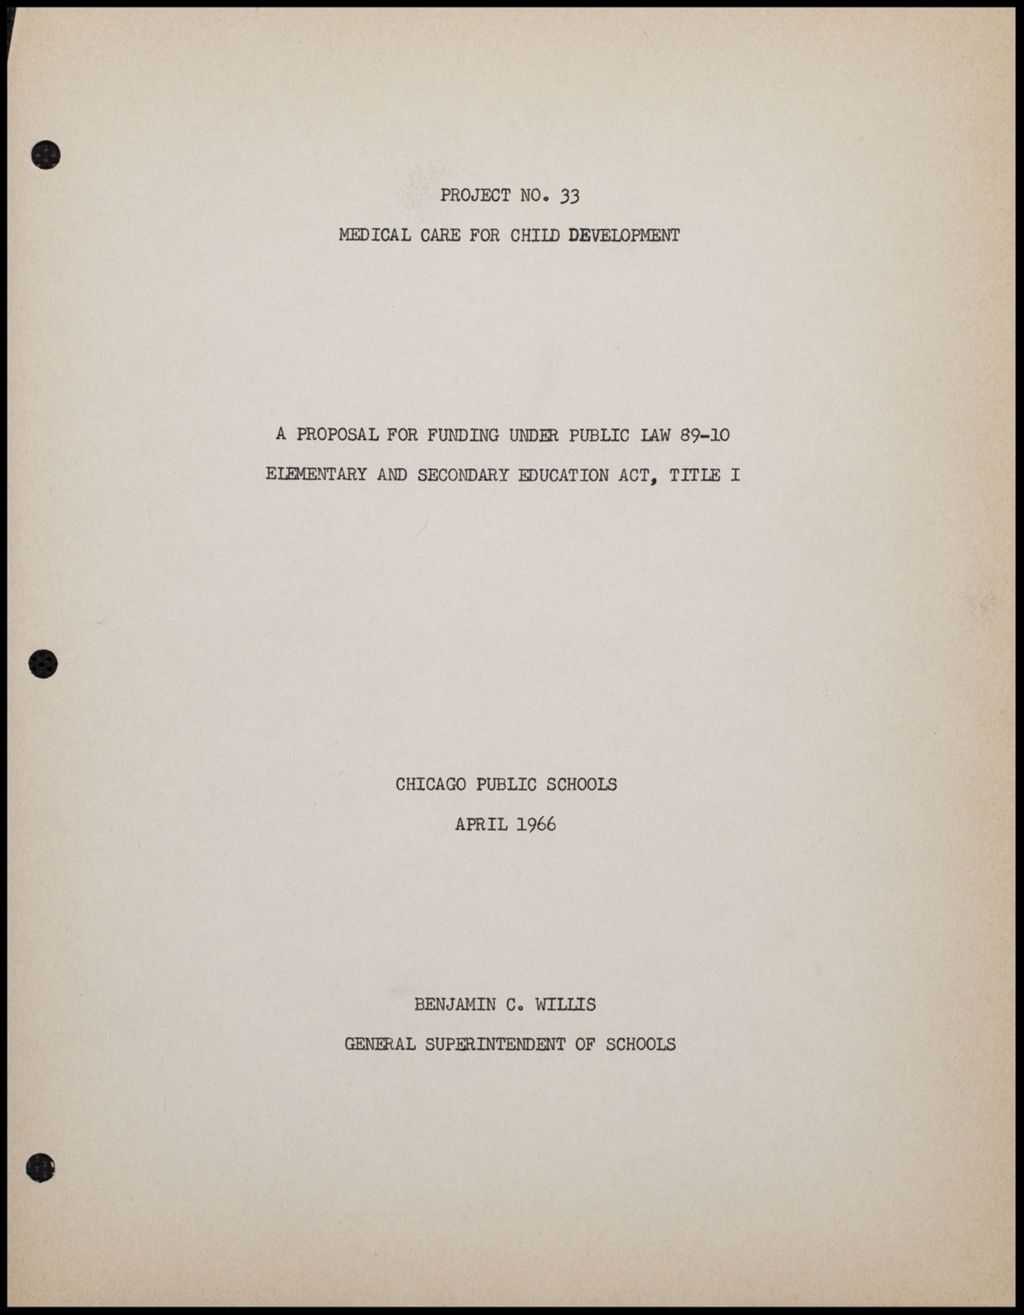 US Commission on Civil Rights, 1966 (Folder III-183)